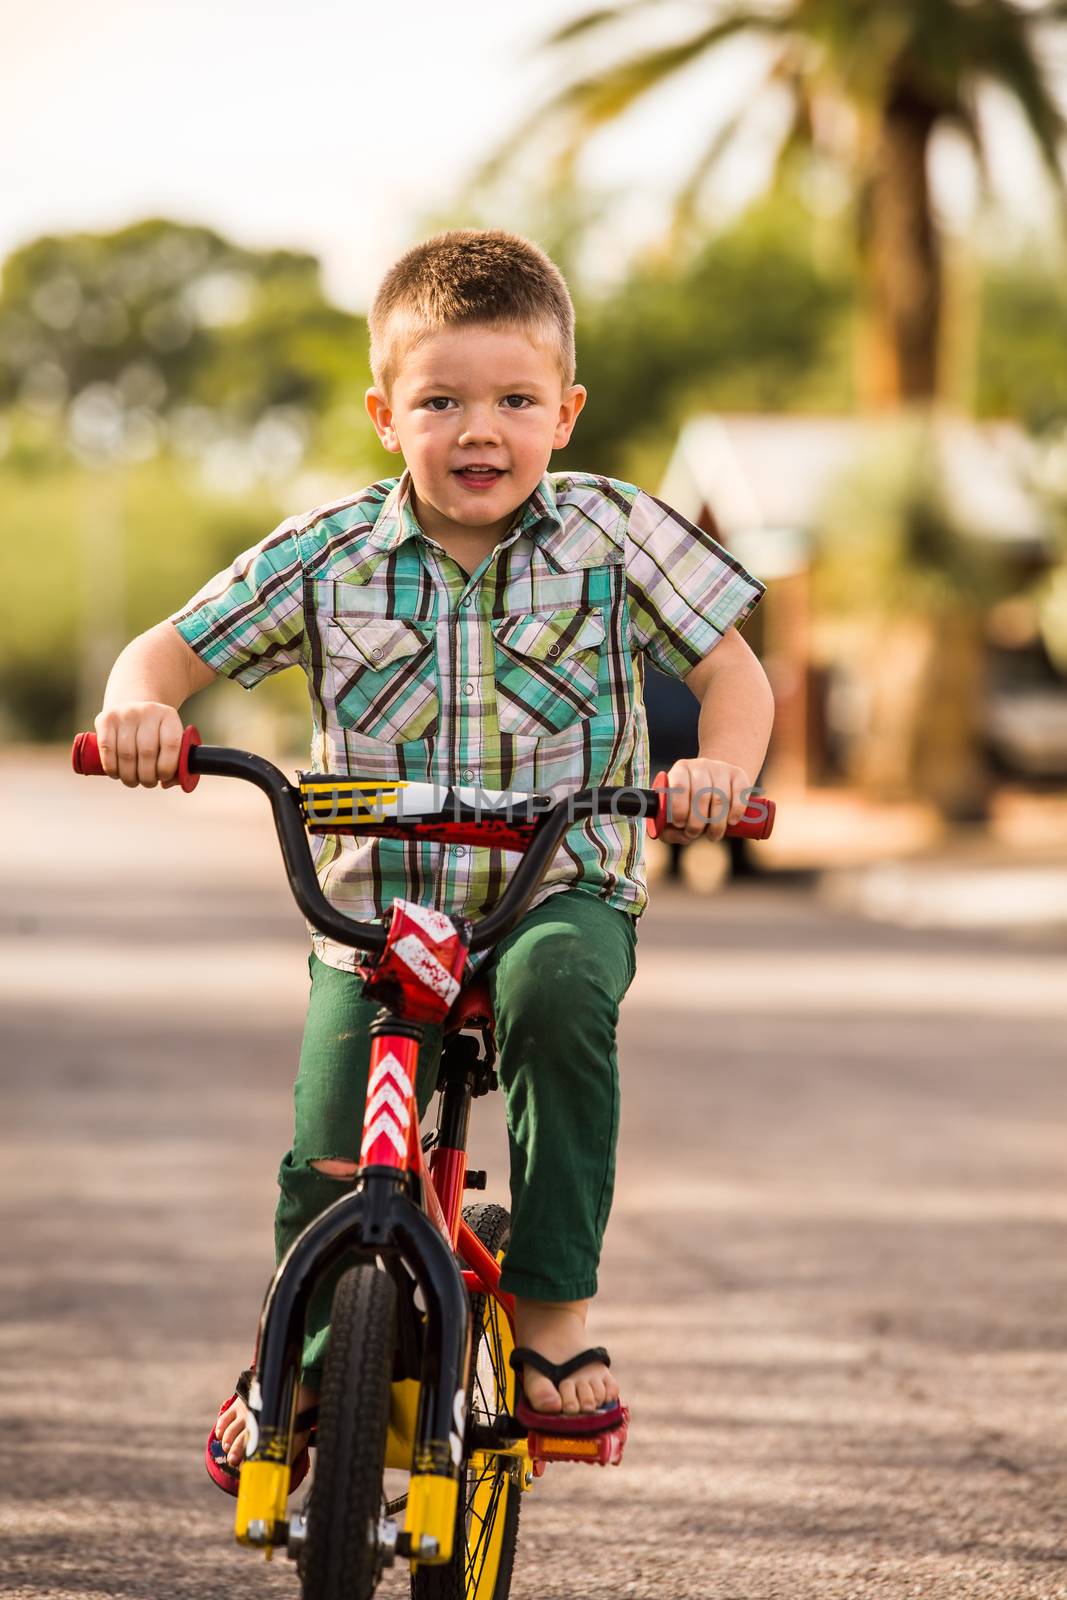 Single young boy having fun riding his bike